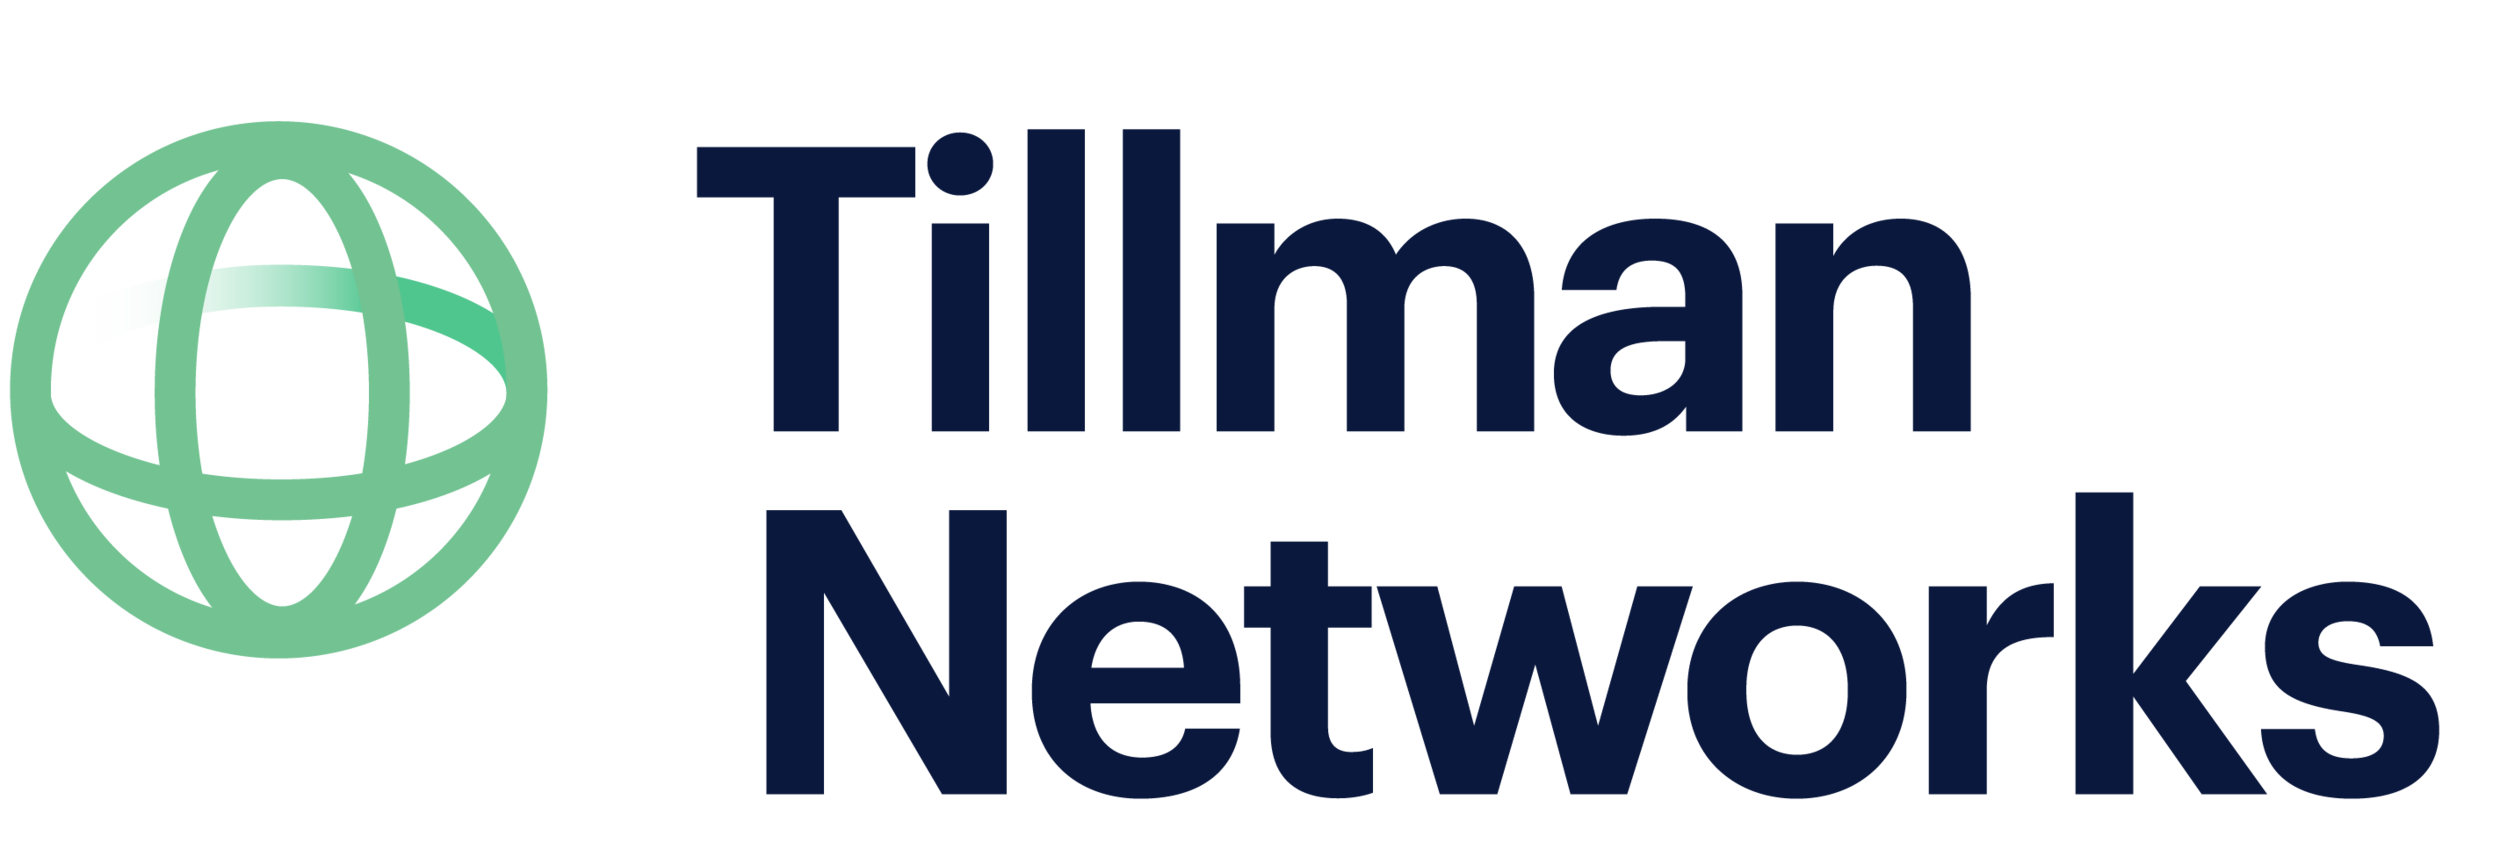 Tillman网络